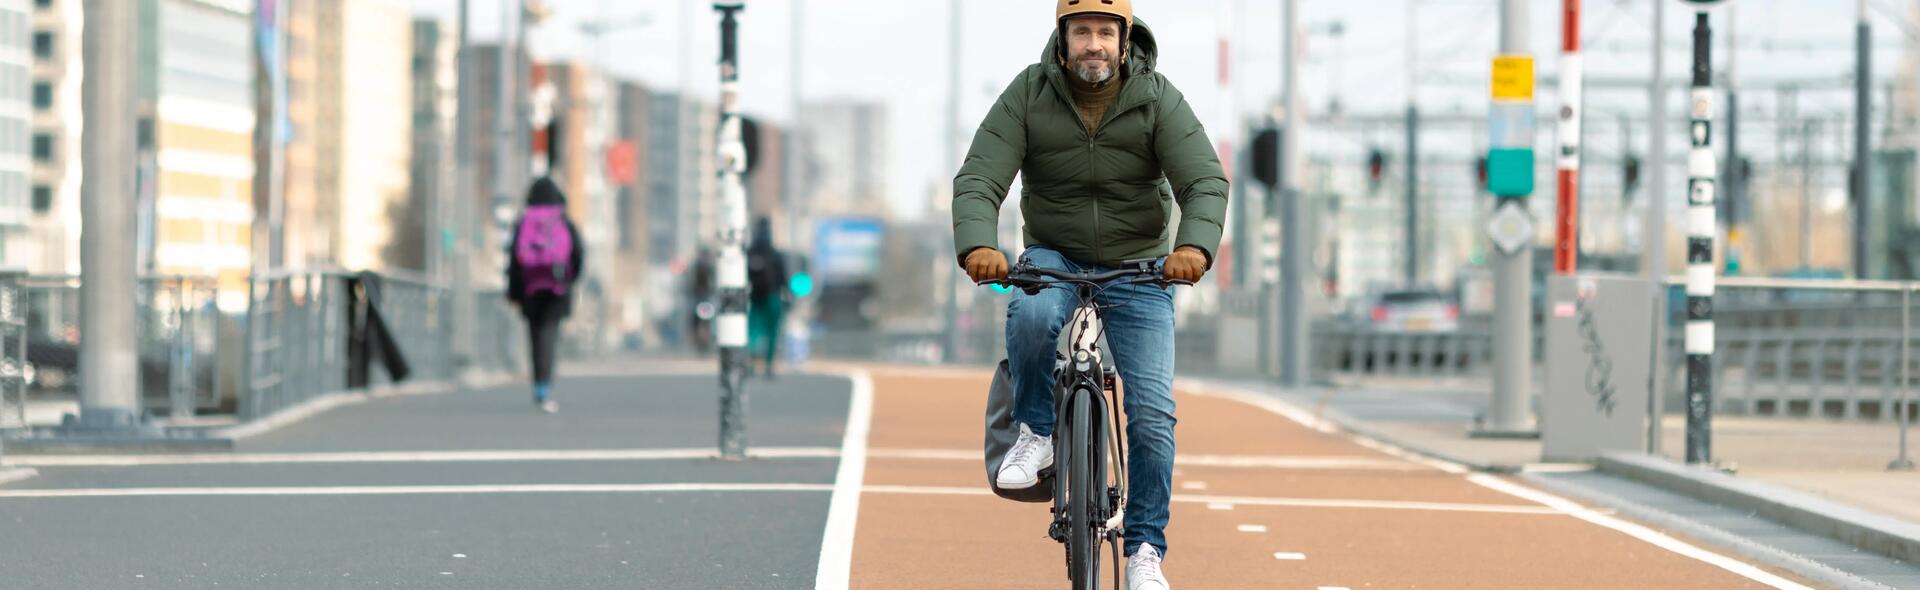 jonge man die fietsen leren in de stad